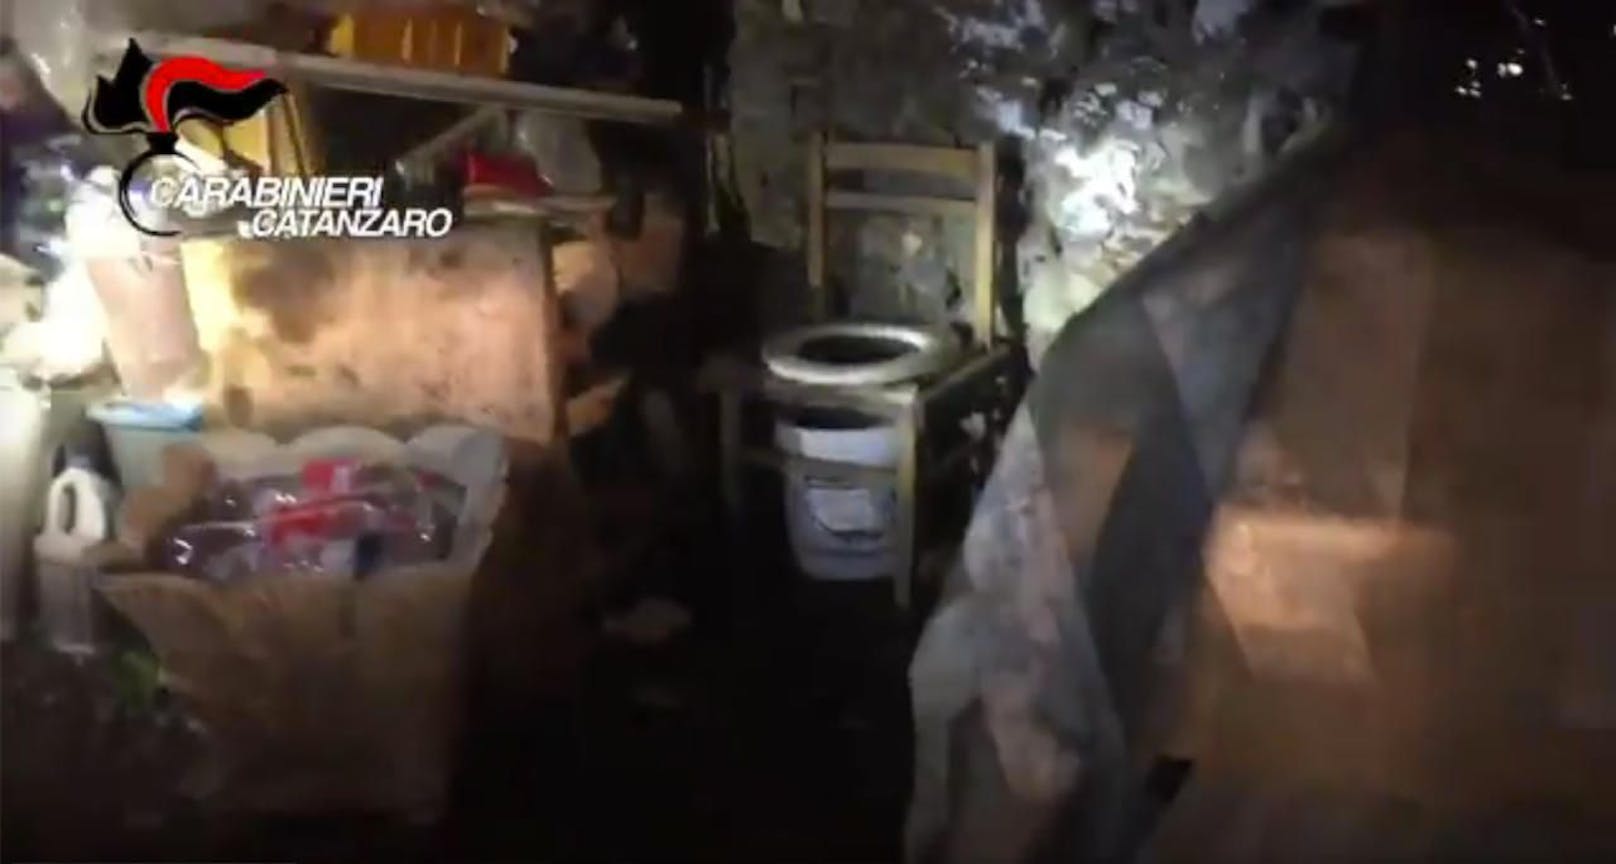 Links die Essensvorräte, rechts ein notdürftiges Klo: In diesem Keller hauste die Frau mit ihren Kindern als Sexsklavin.